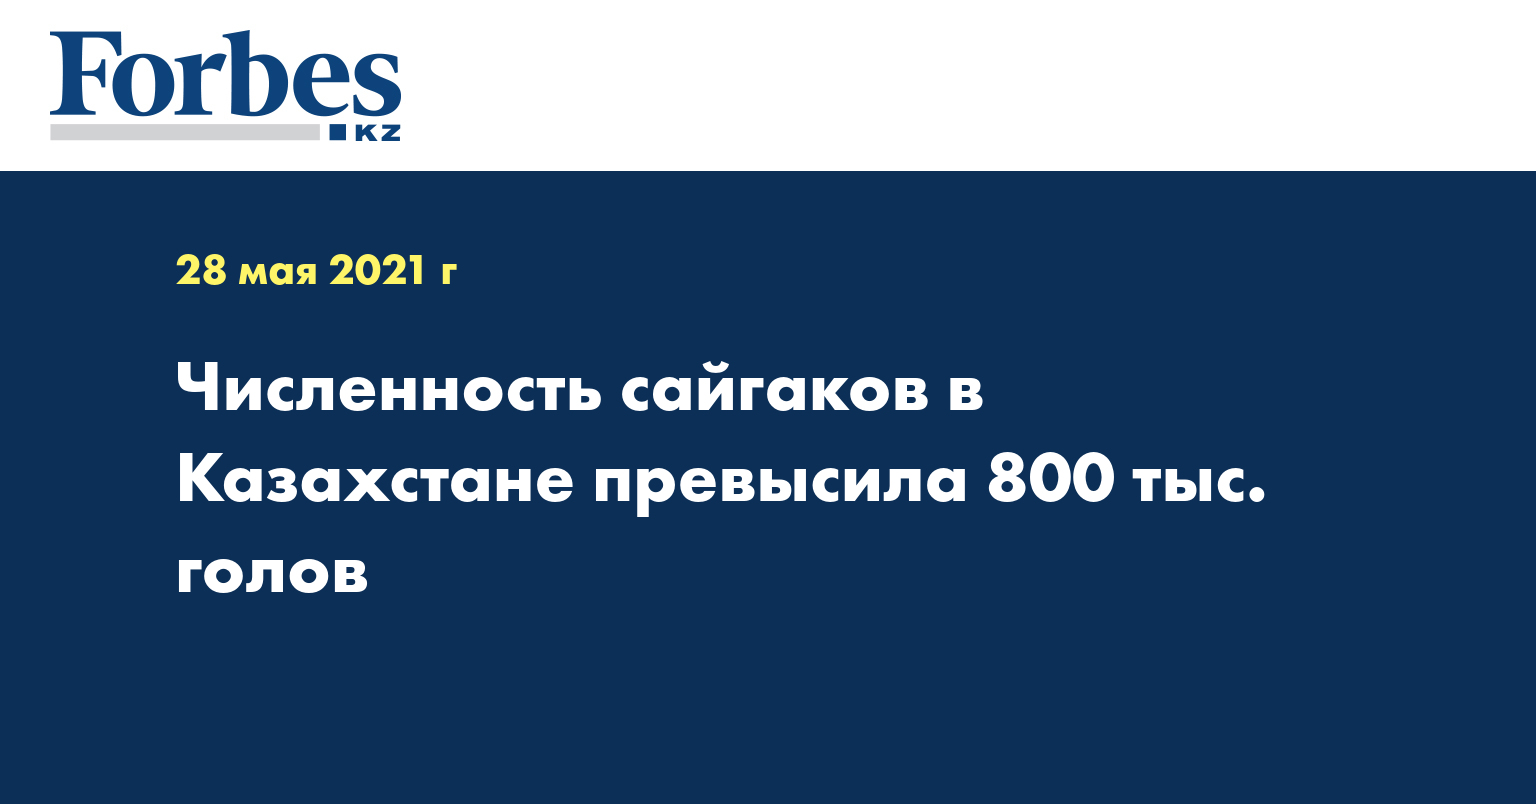 Численность сайгаков в Казахстане превысила 800 тыс. голов